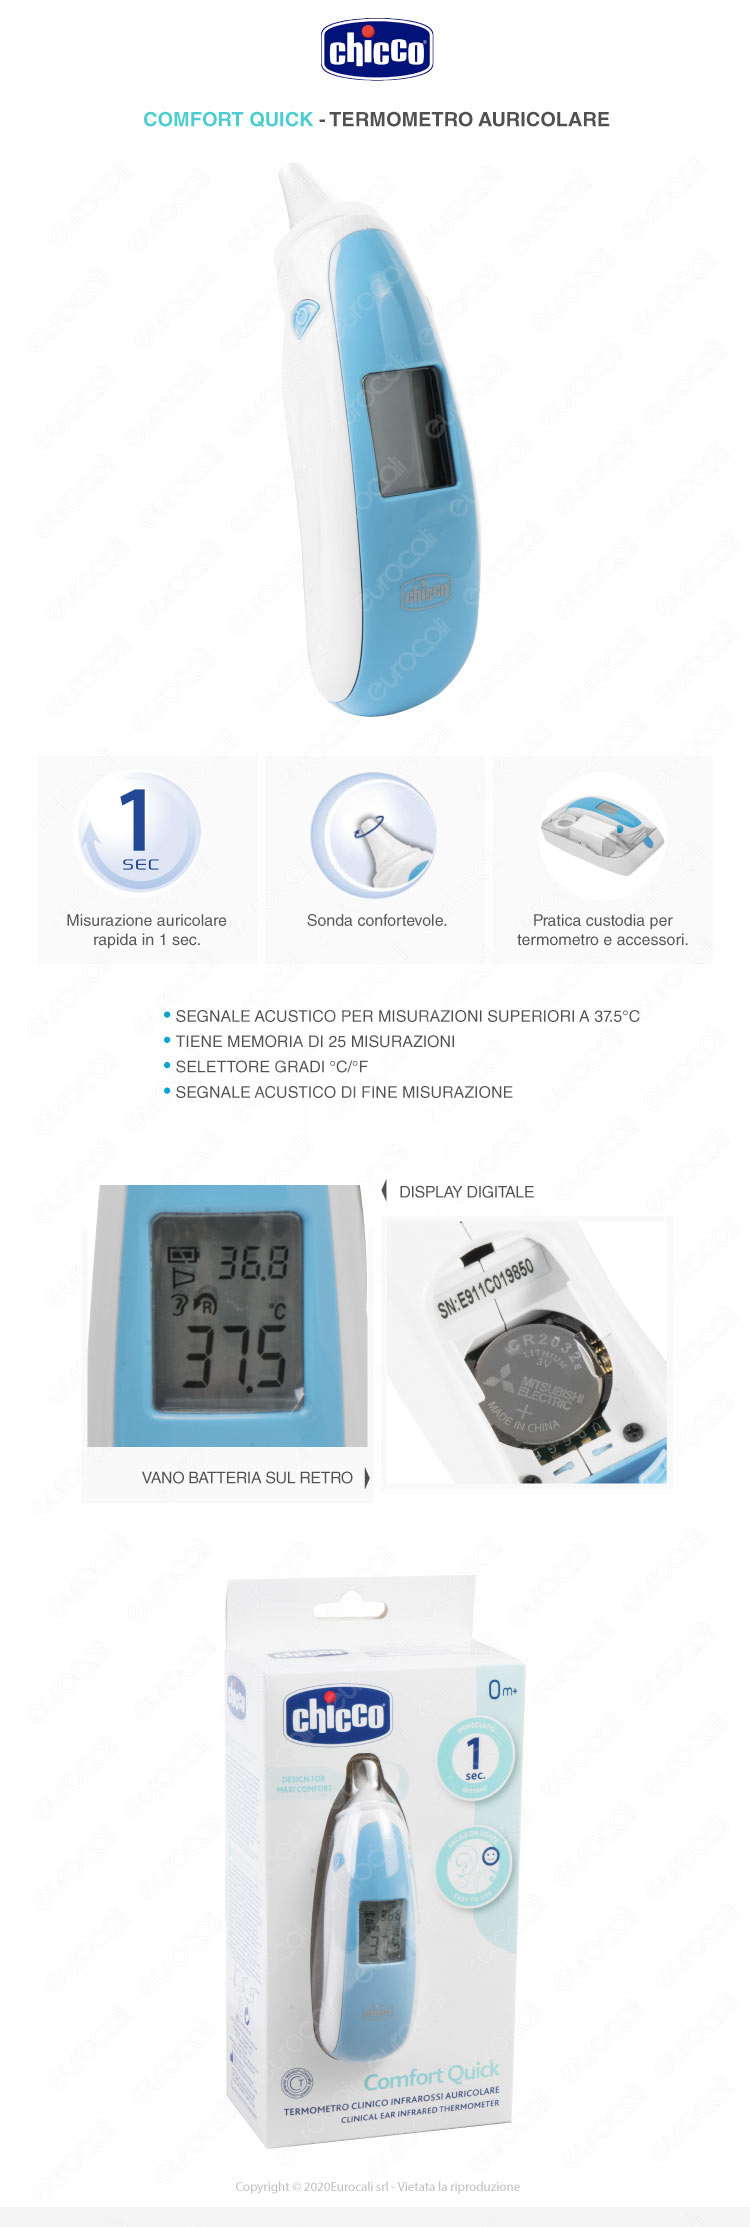 Come Usare un Termometro Auricolare: 10 Passaggi